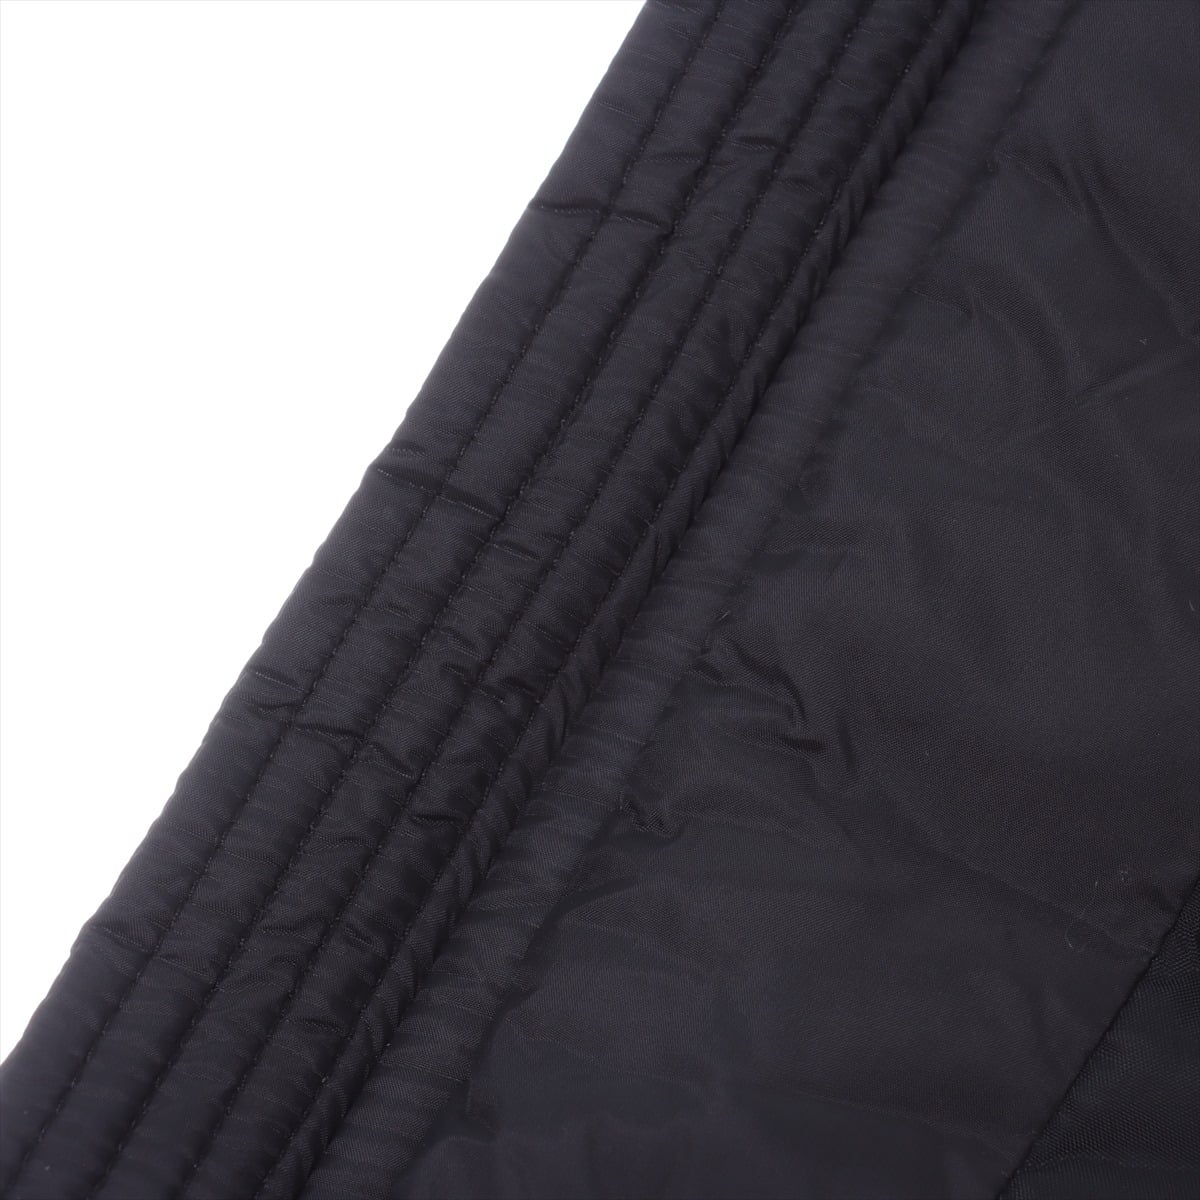 ディーゼル ナイロン ライダースジャケット S メンズ ブラック